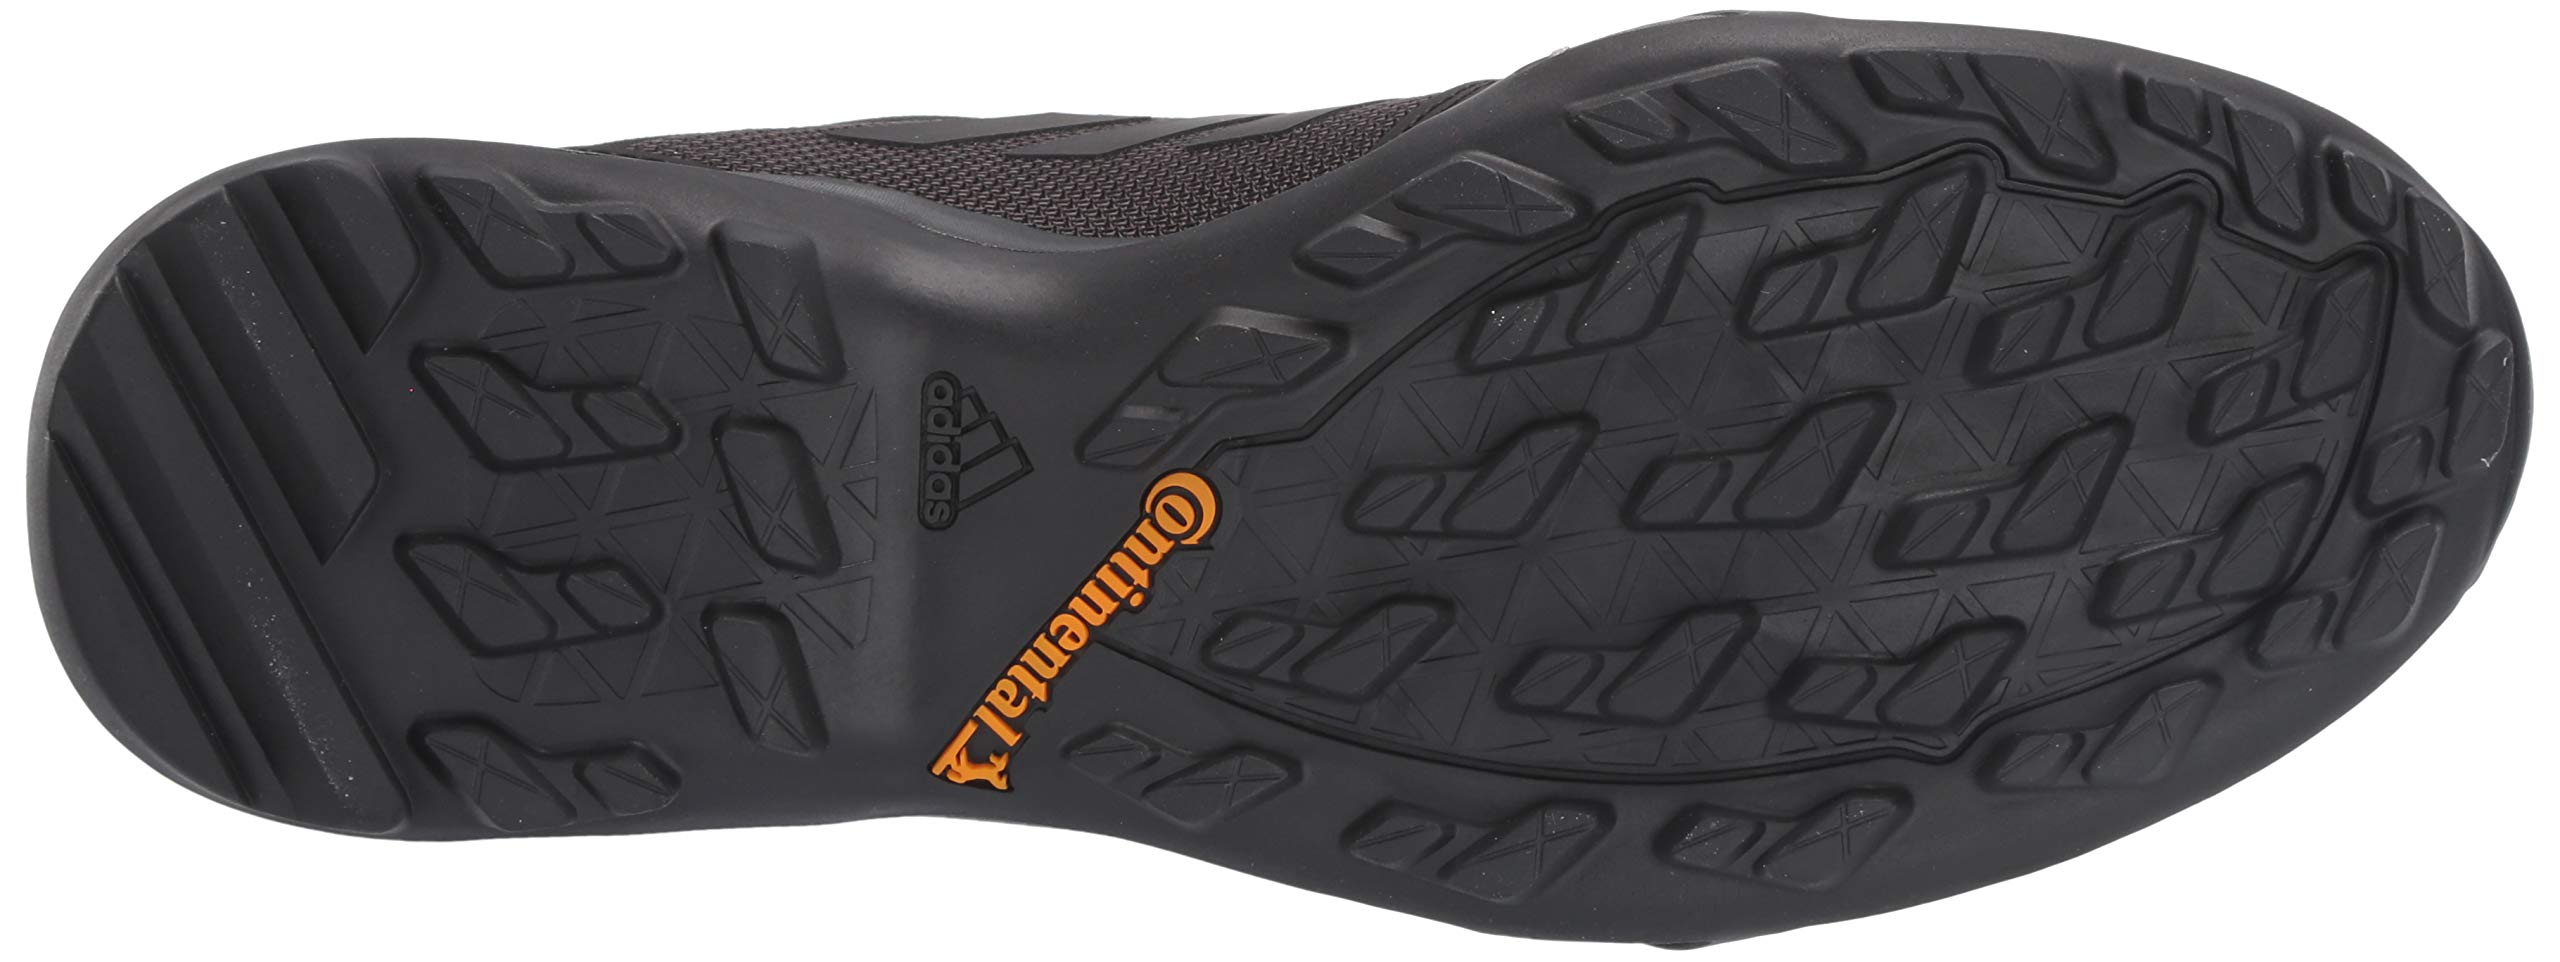 adidas outdoor Men's Terrex Ax3 Hiking Boot